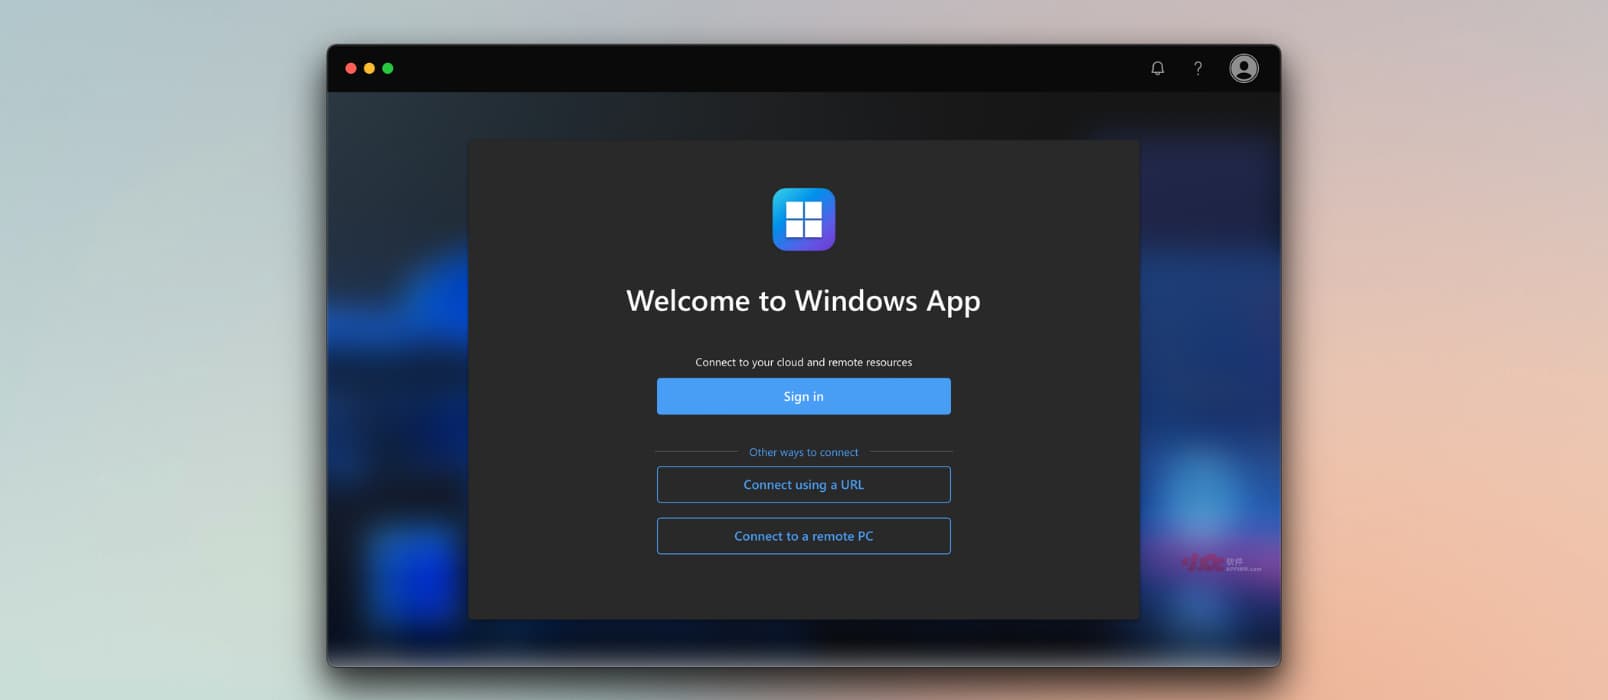 Windows App - 微软发布新预览版程序连接到远程桌面，支持 Azure、Windows 365、Dev Box、远程电脑 